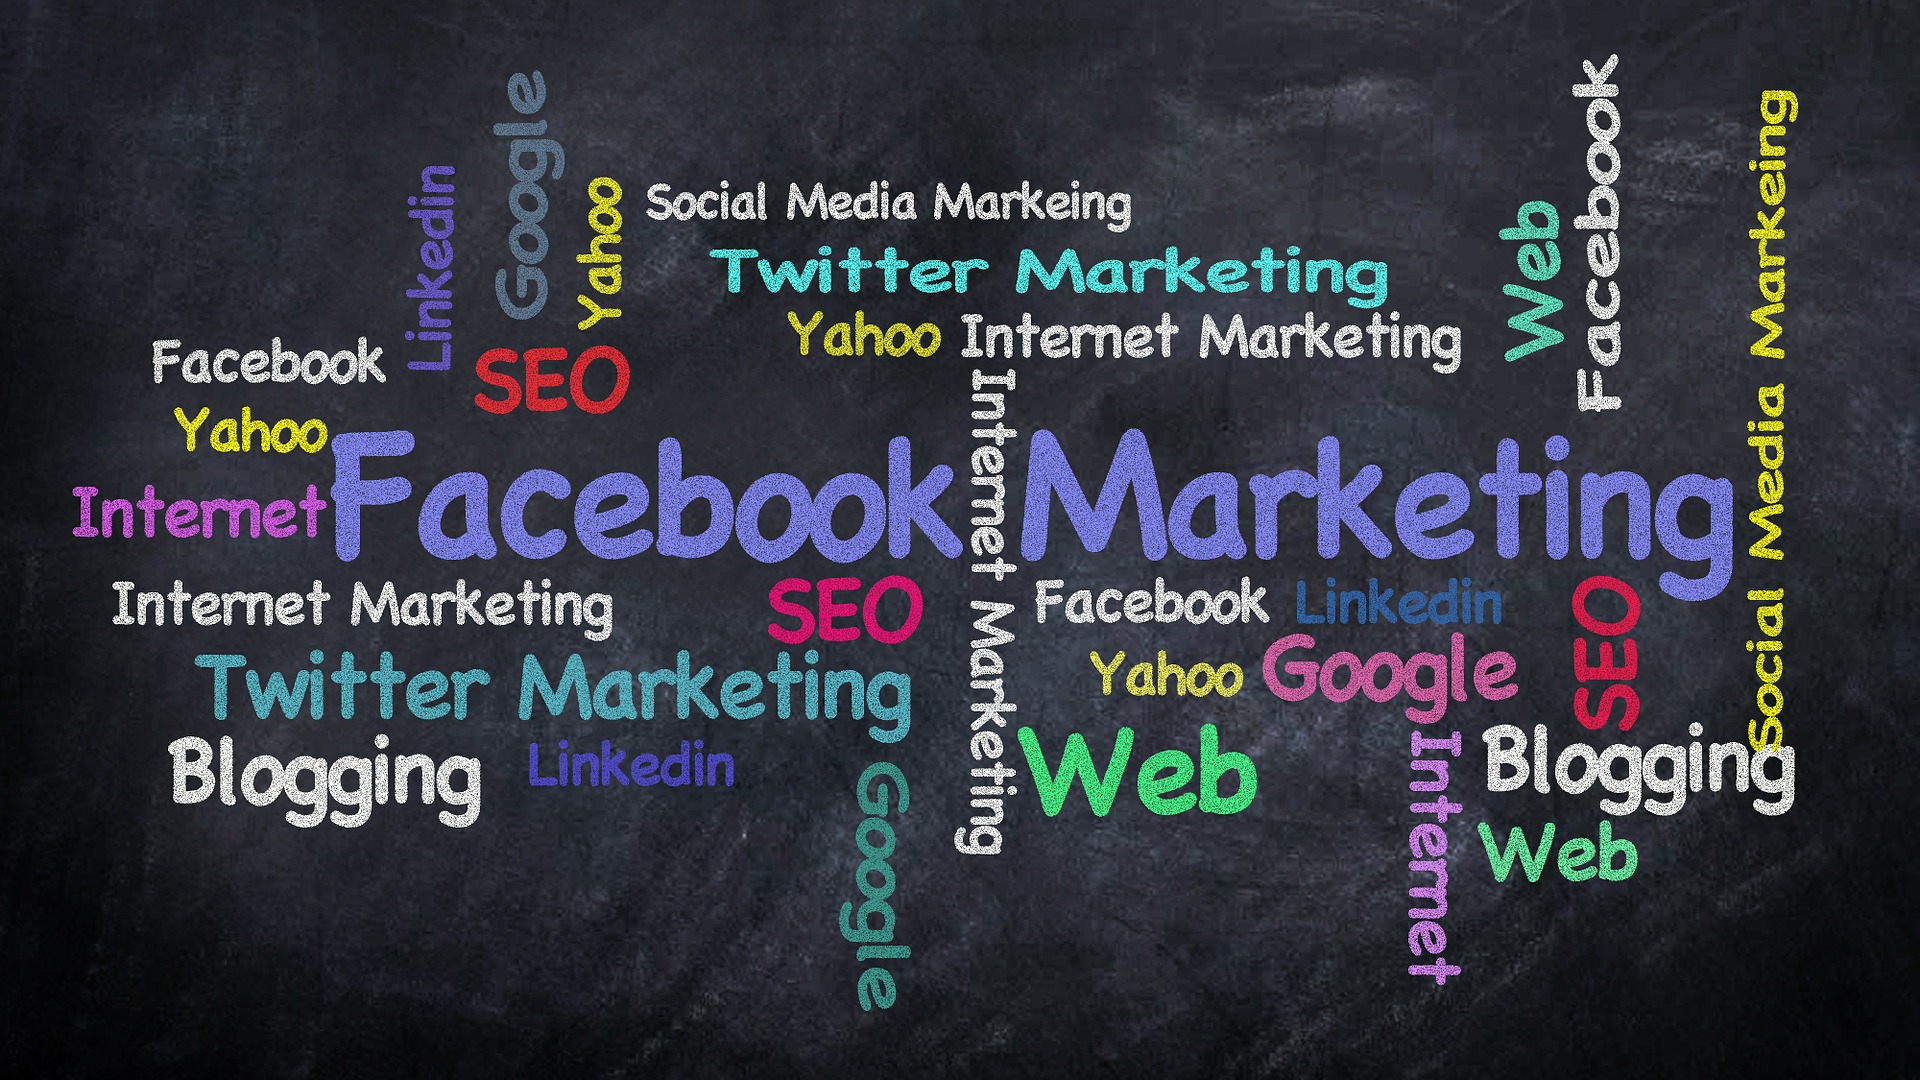 多个互联网营销术语和方式以及互联网平台